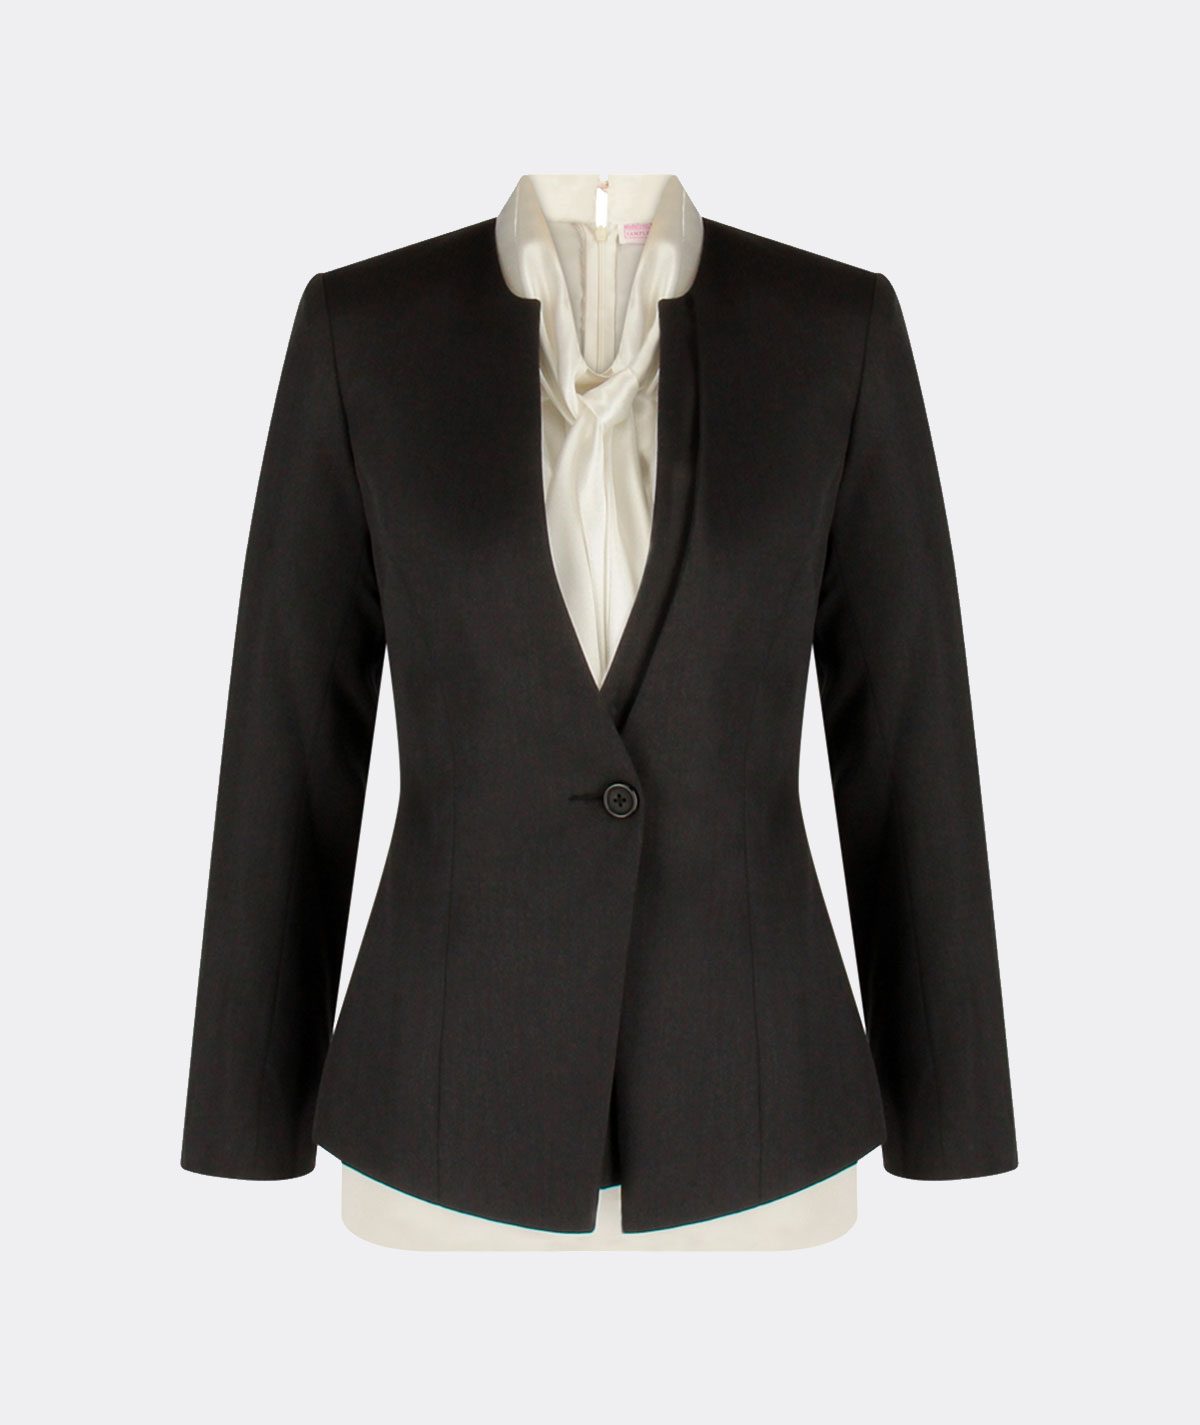 Bank Uniform Female Business Suit Consultant Executives Blazer Suit